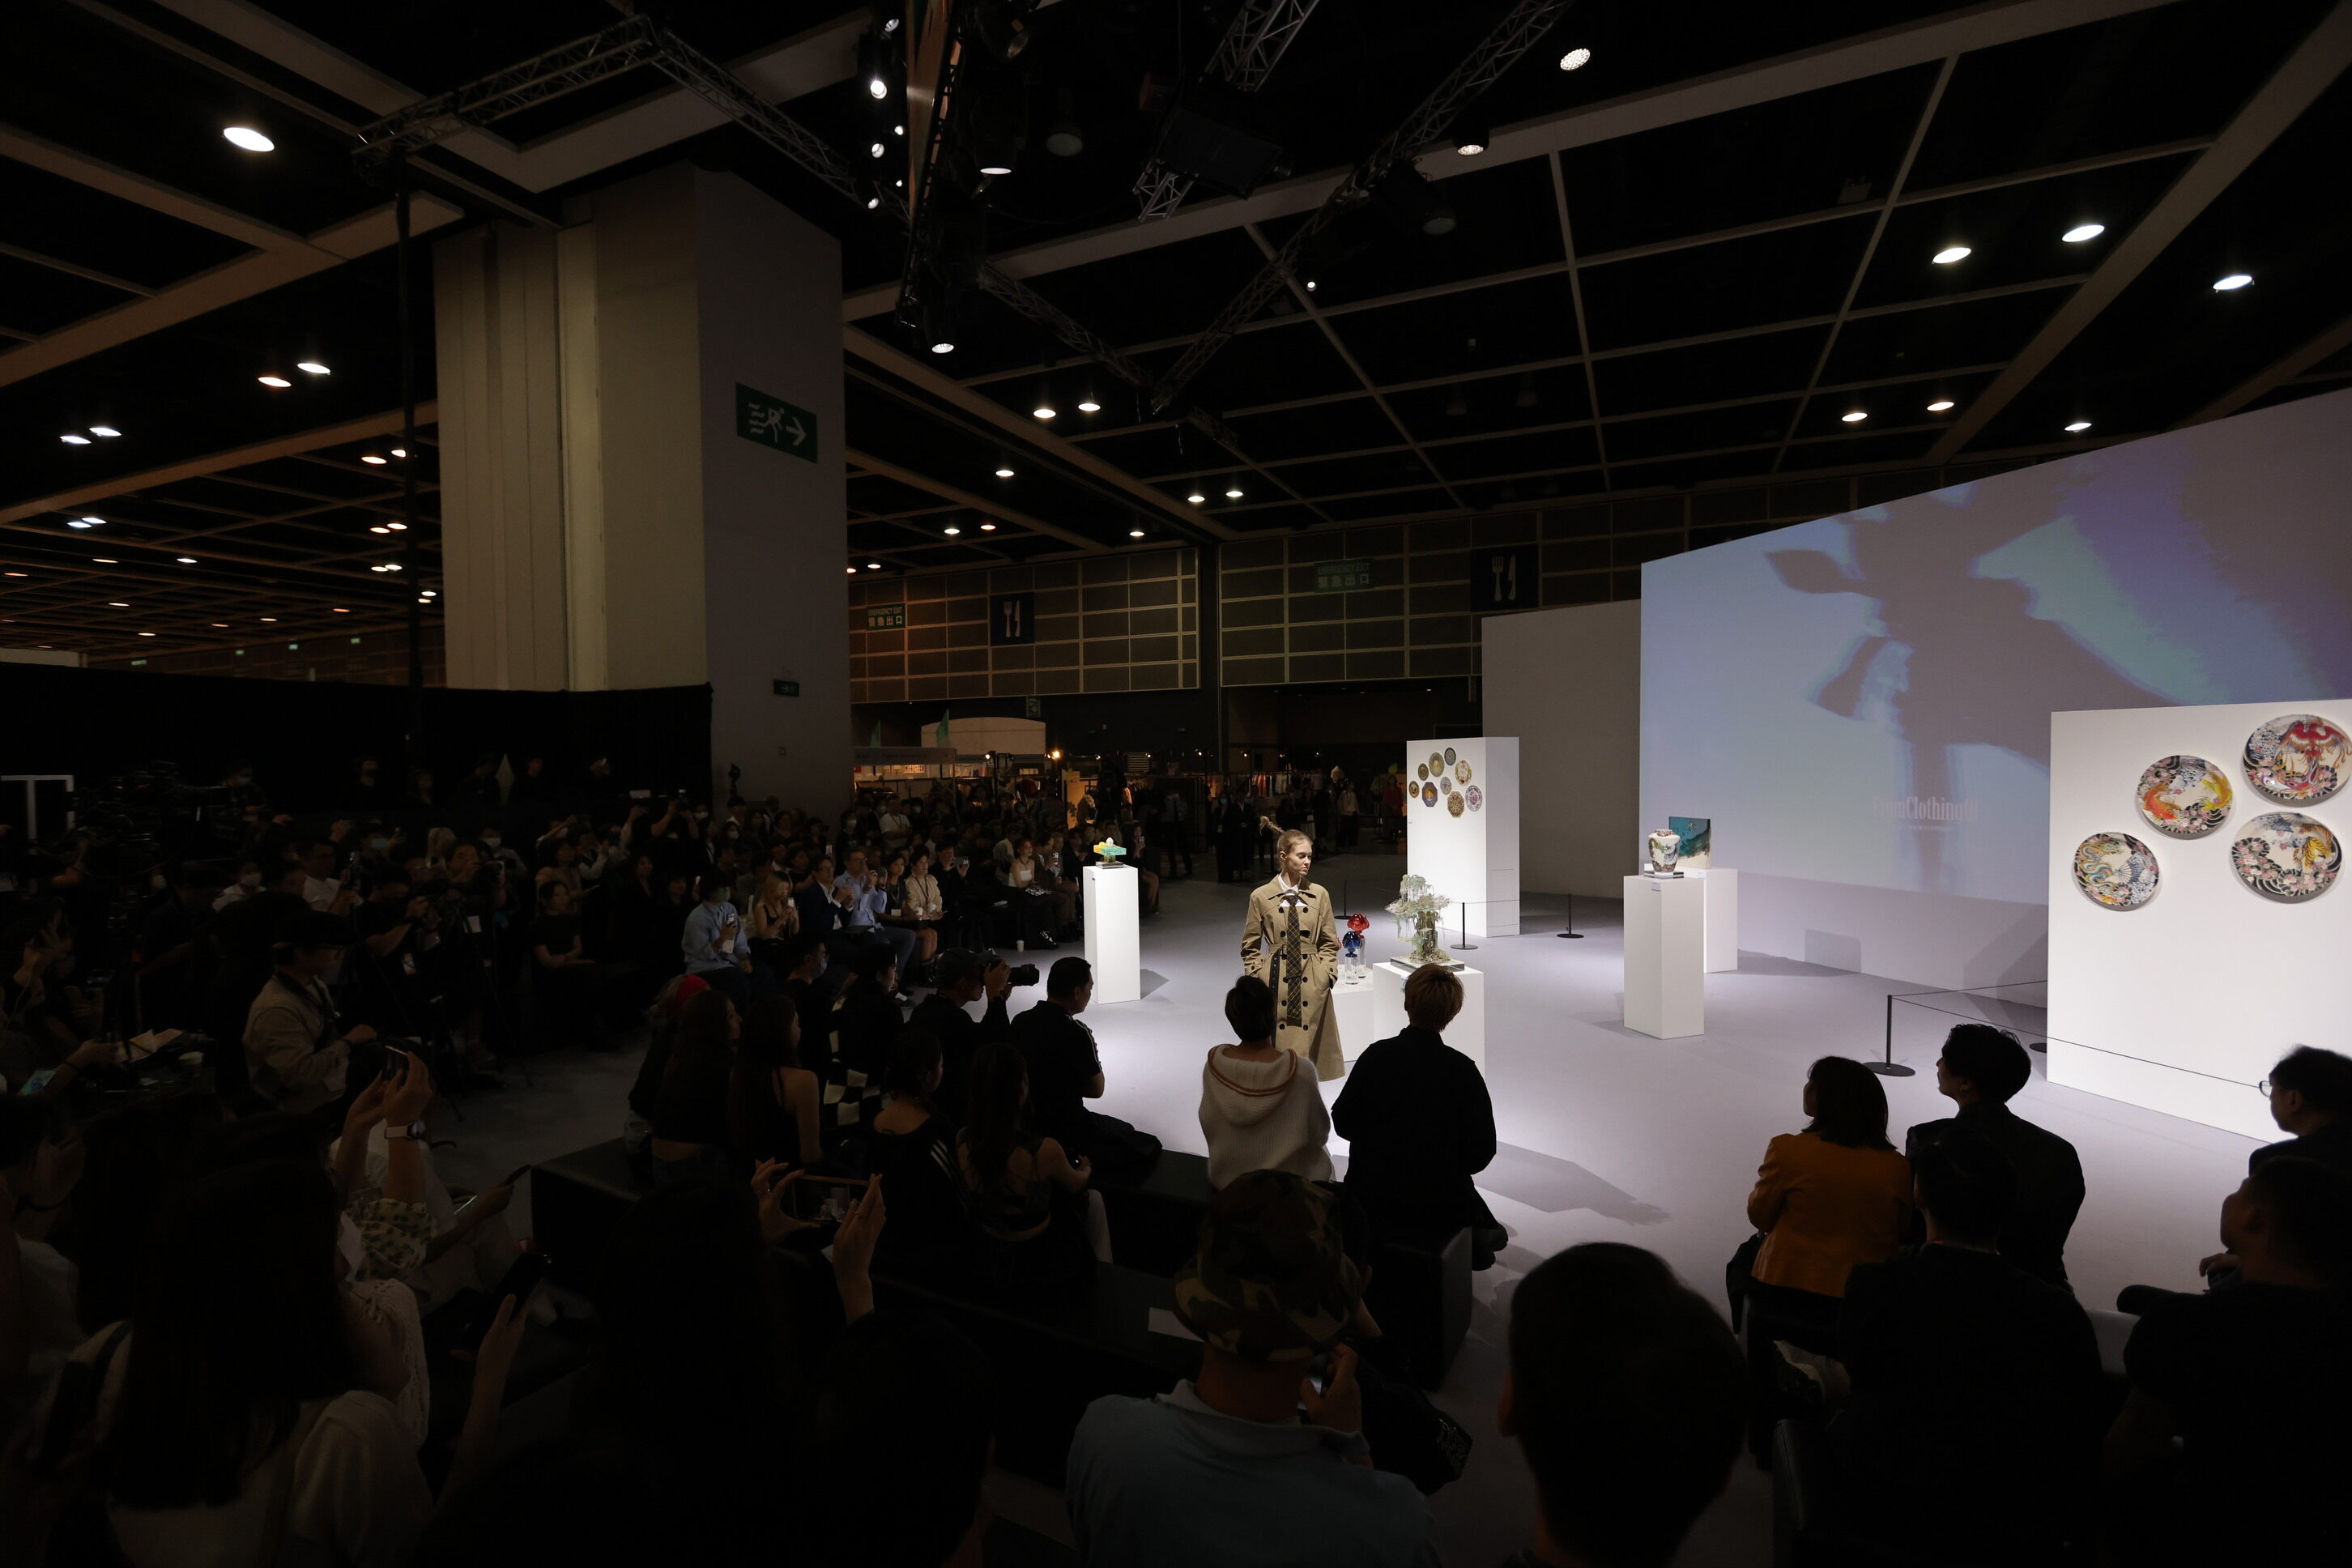 香港時裝節2024周末舉行！ 設主題展區 推廣虛擬時裝/可持續時尚＋時裝巡禮